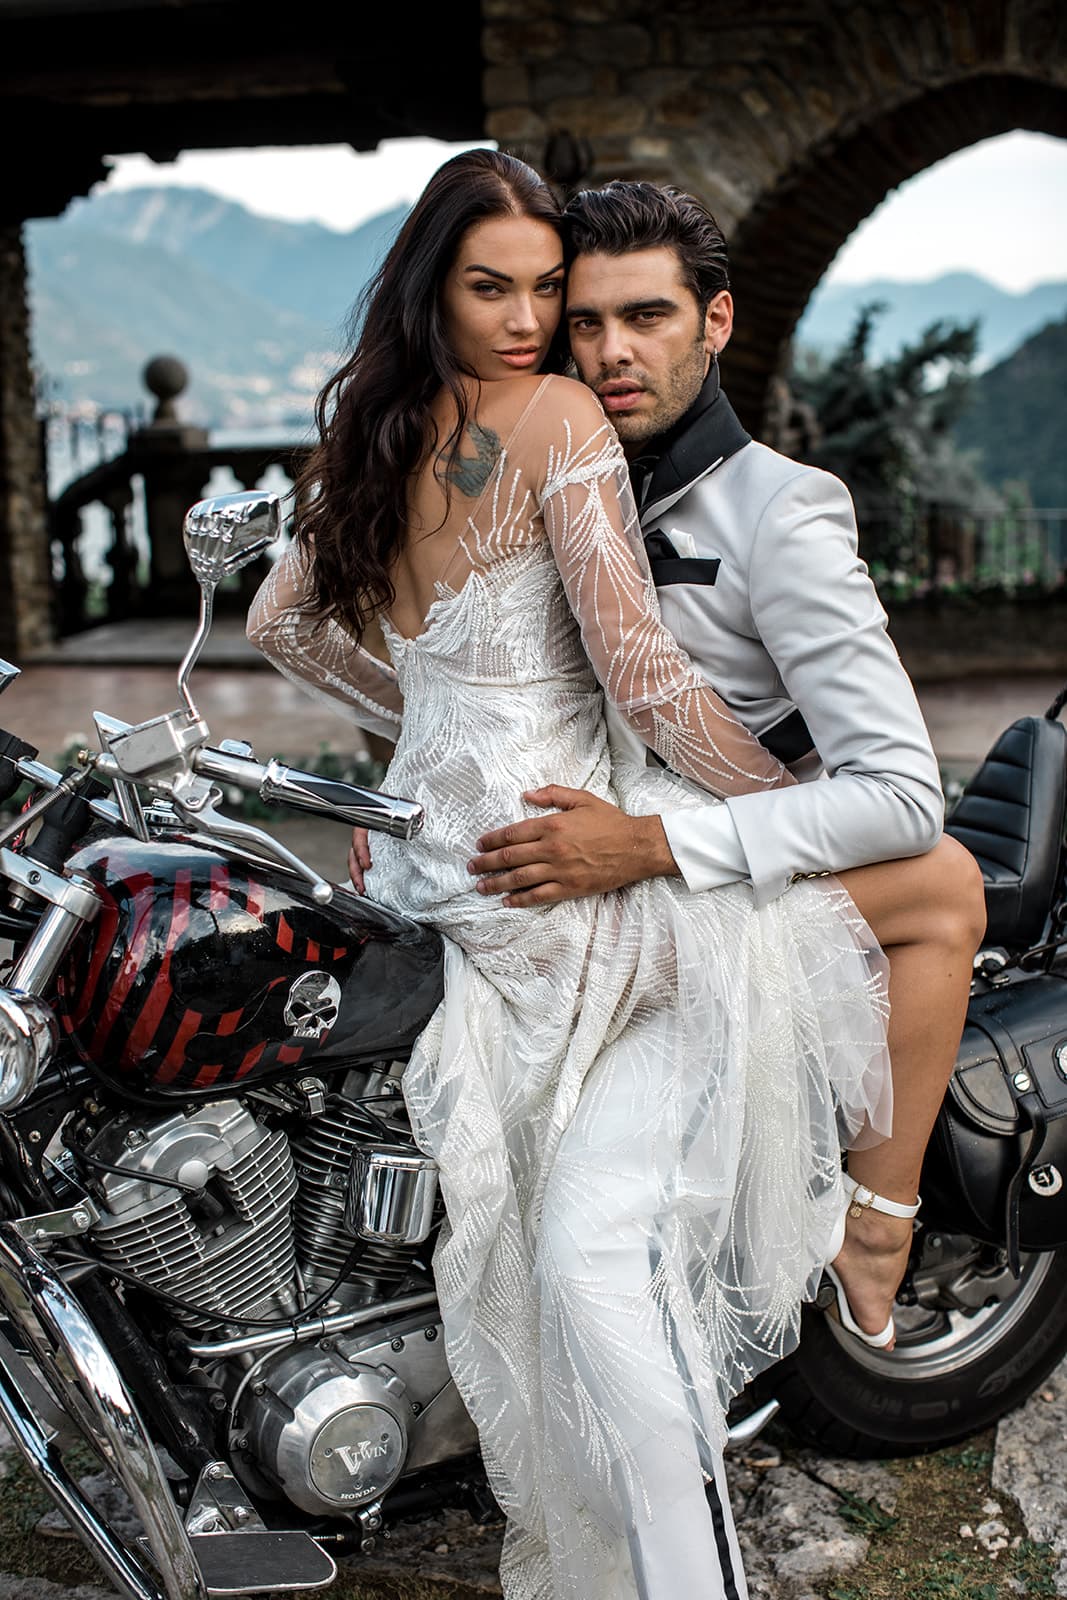 Groom embraces bride on motorcycle